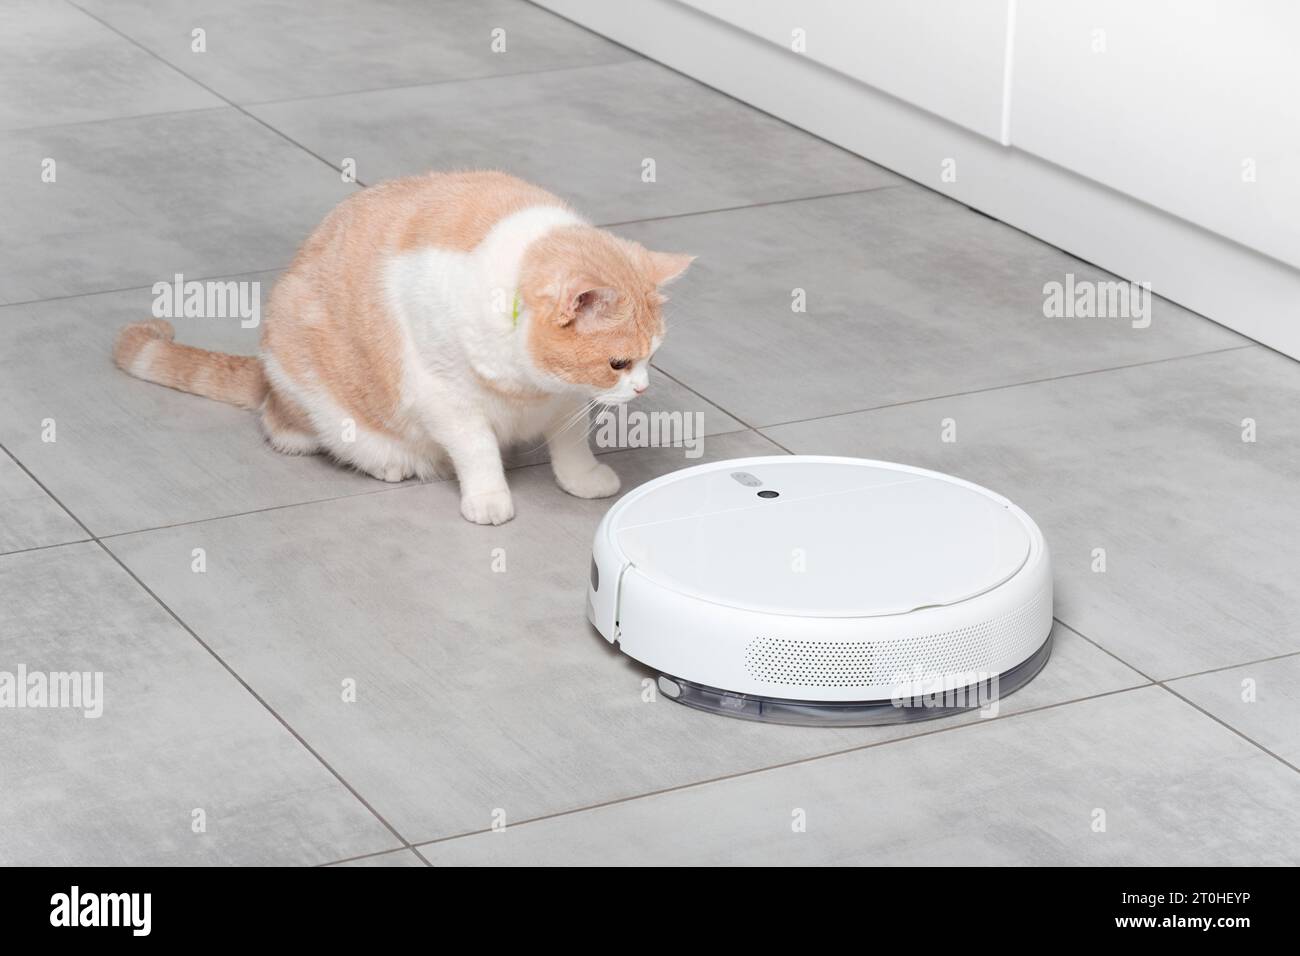 Ein waschender weißer Roboter-Staubsauger reinigt die Küche, eine schöne flauschige schottische gerade beige Katze sieht überrascht aus. Reinigung mit Beton ti Stockfoto